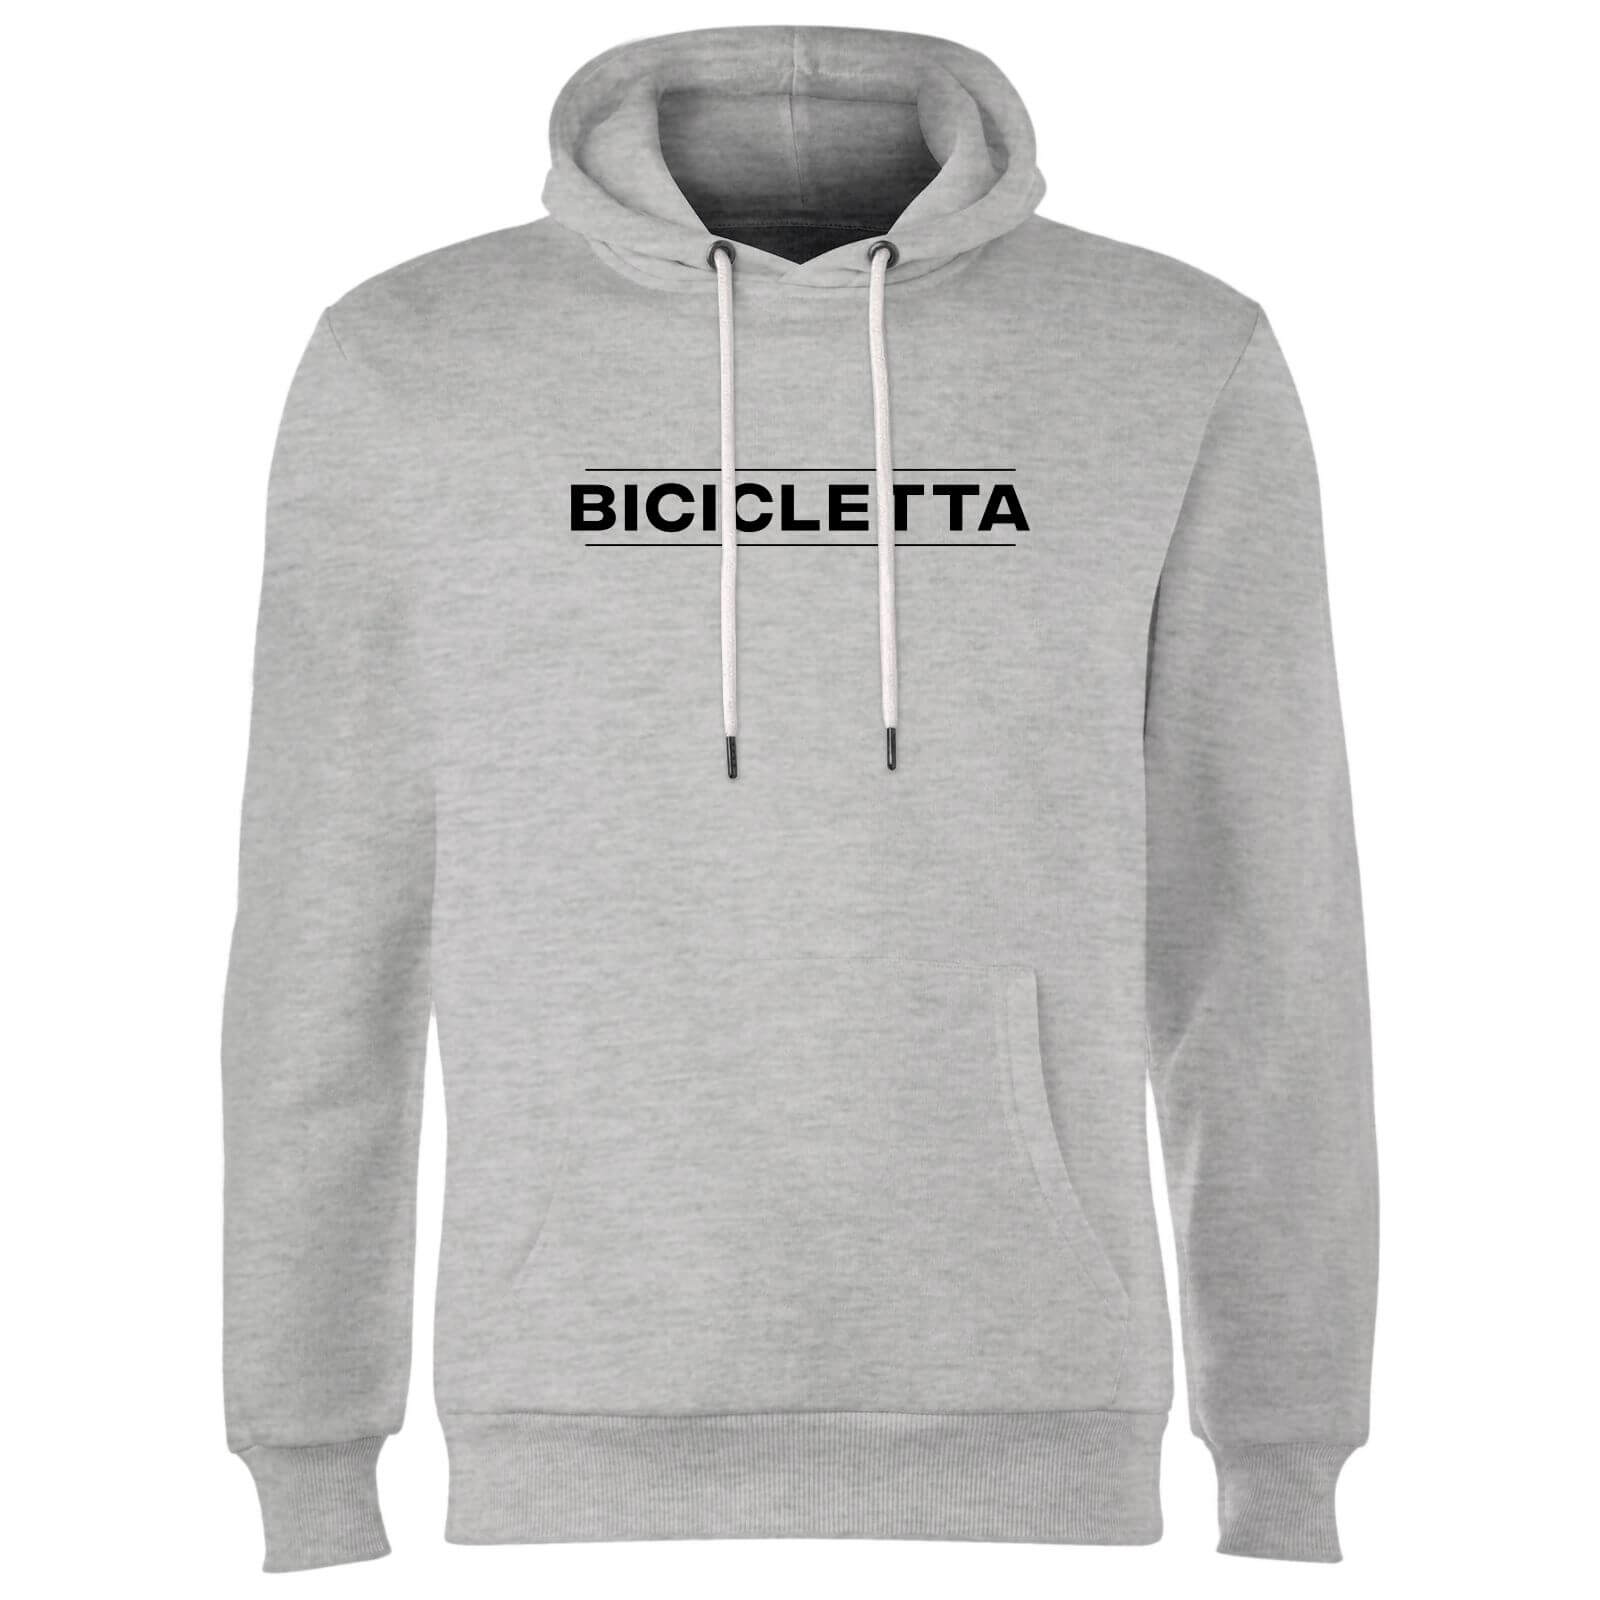 Bicicletta Hoodie - Grey - XXL - Grey